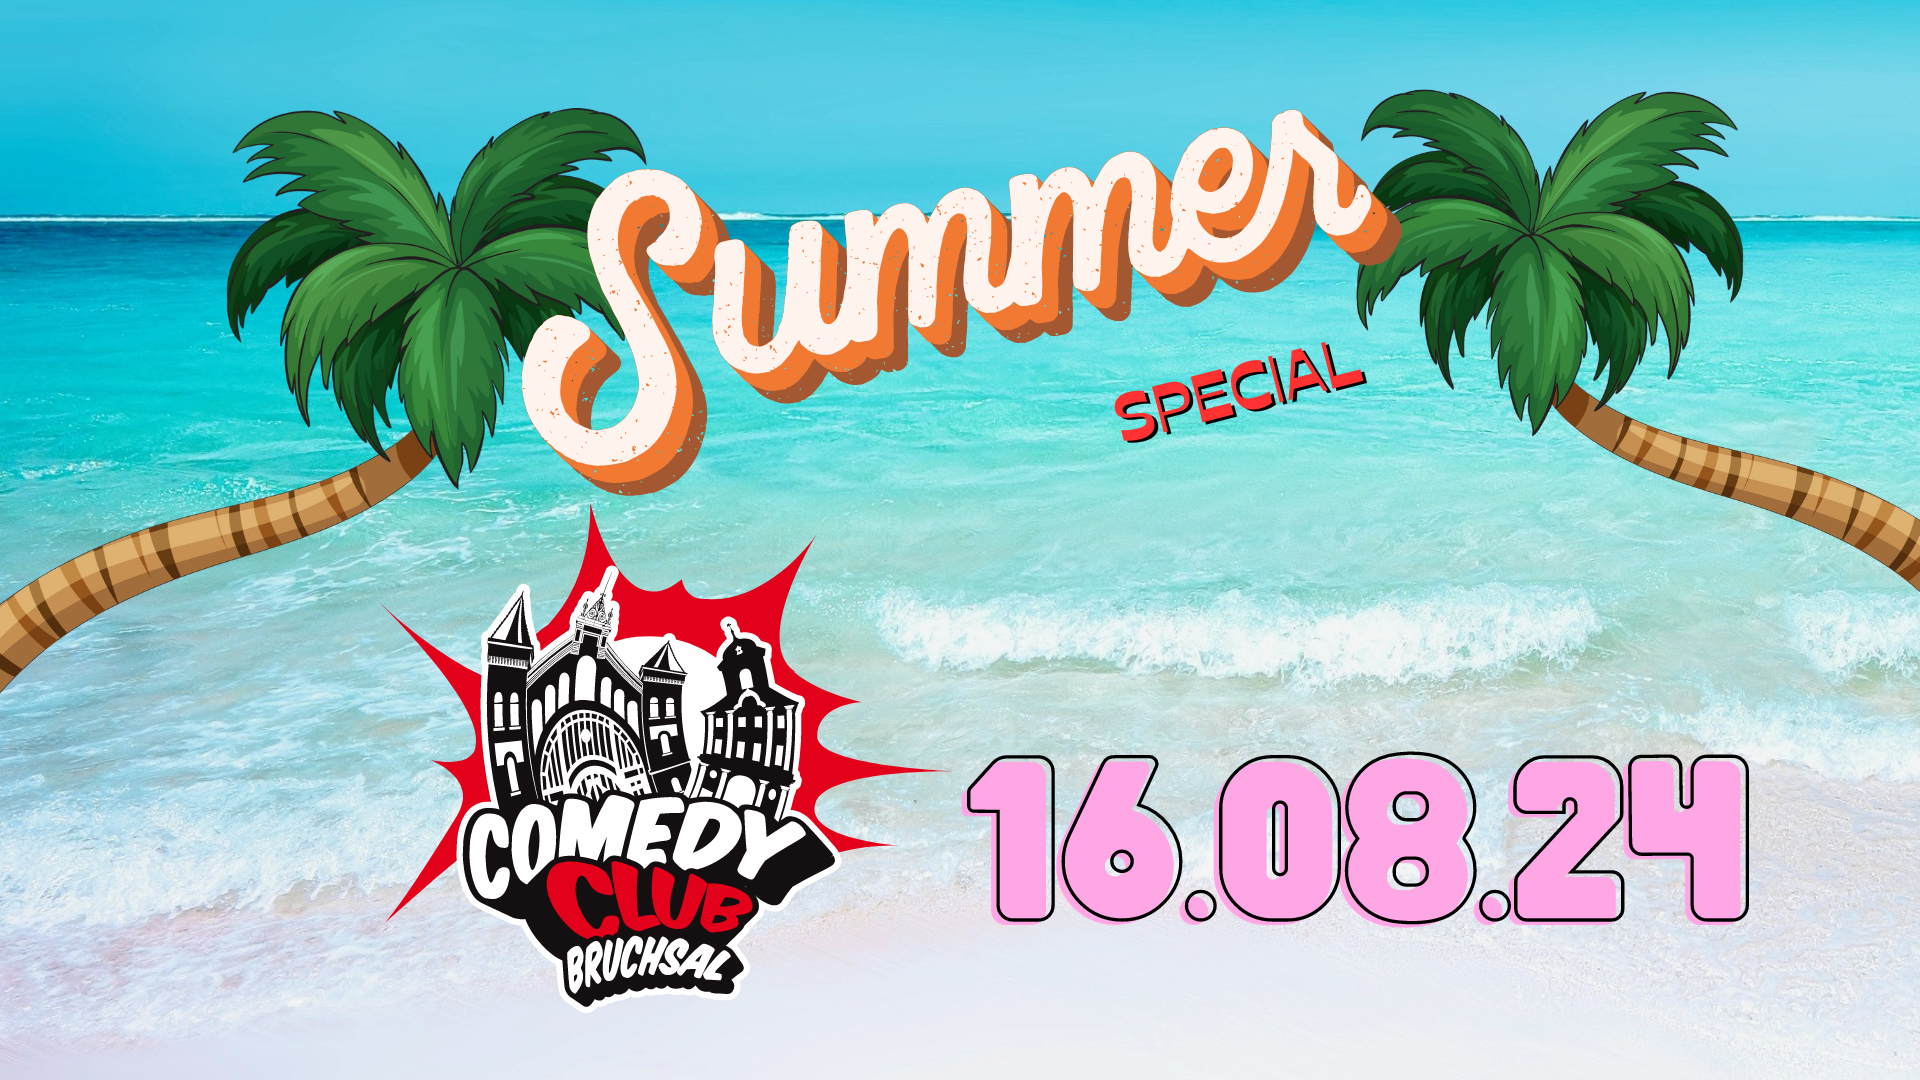 Summer Special - Comedy Club Bruchsal 